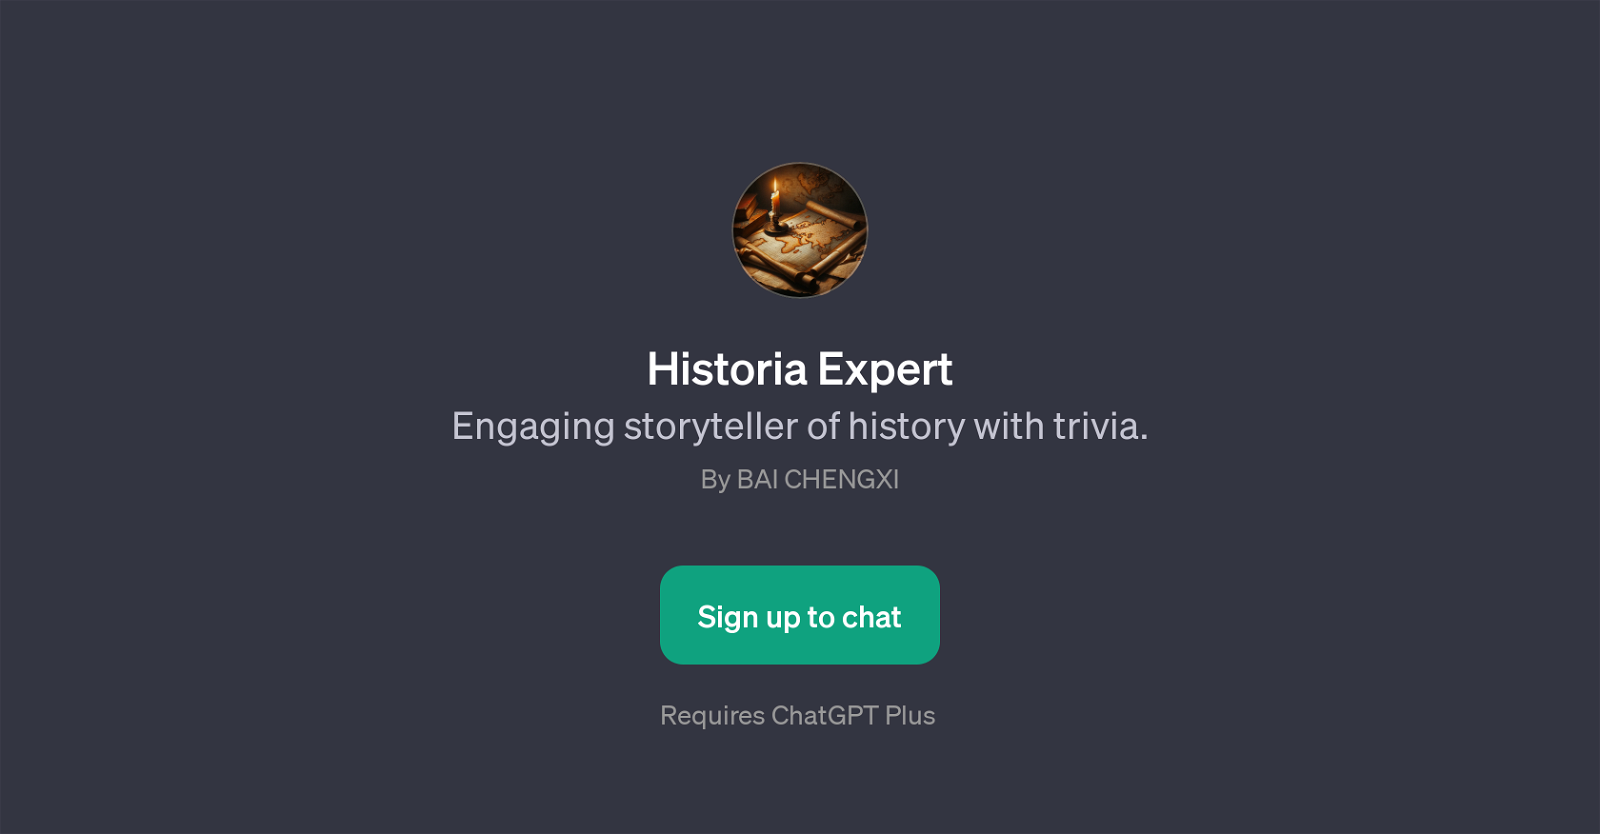 Historia Expert website